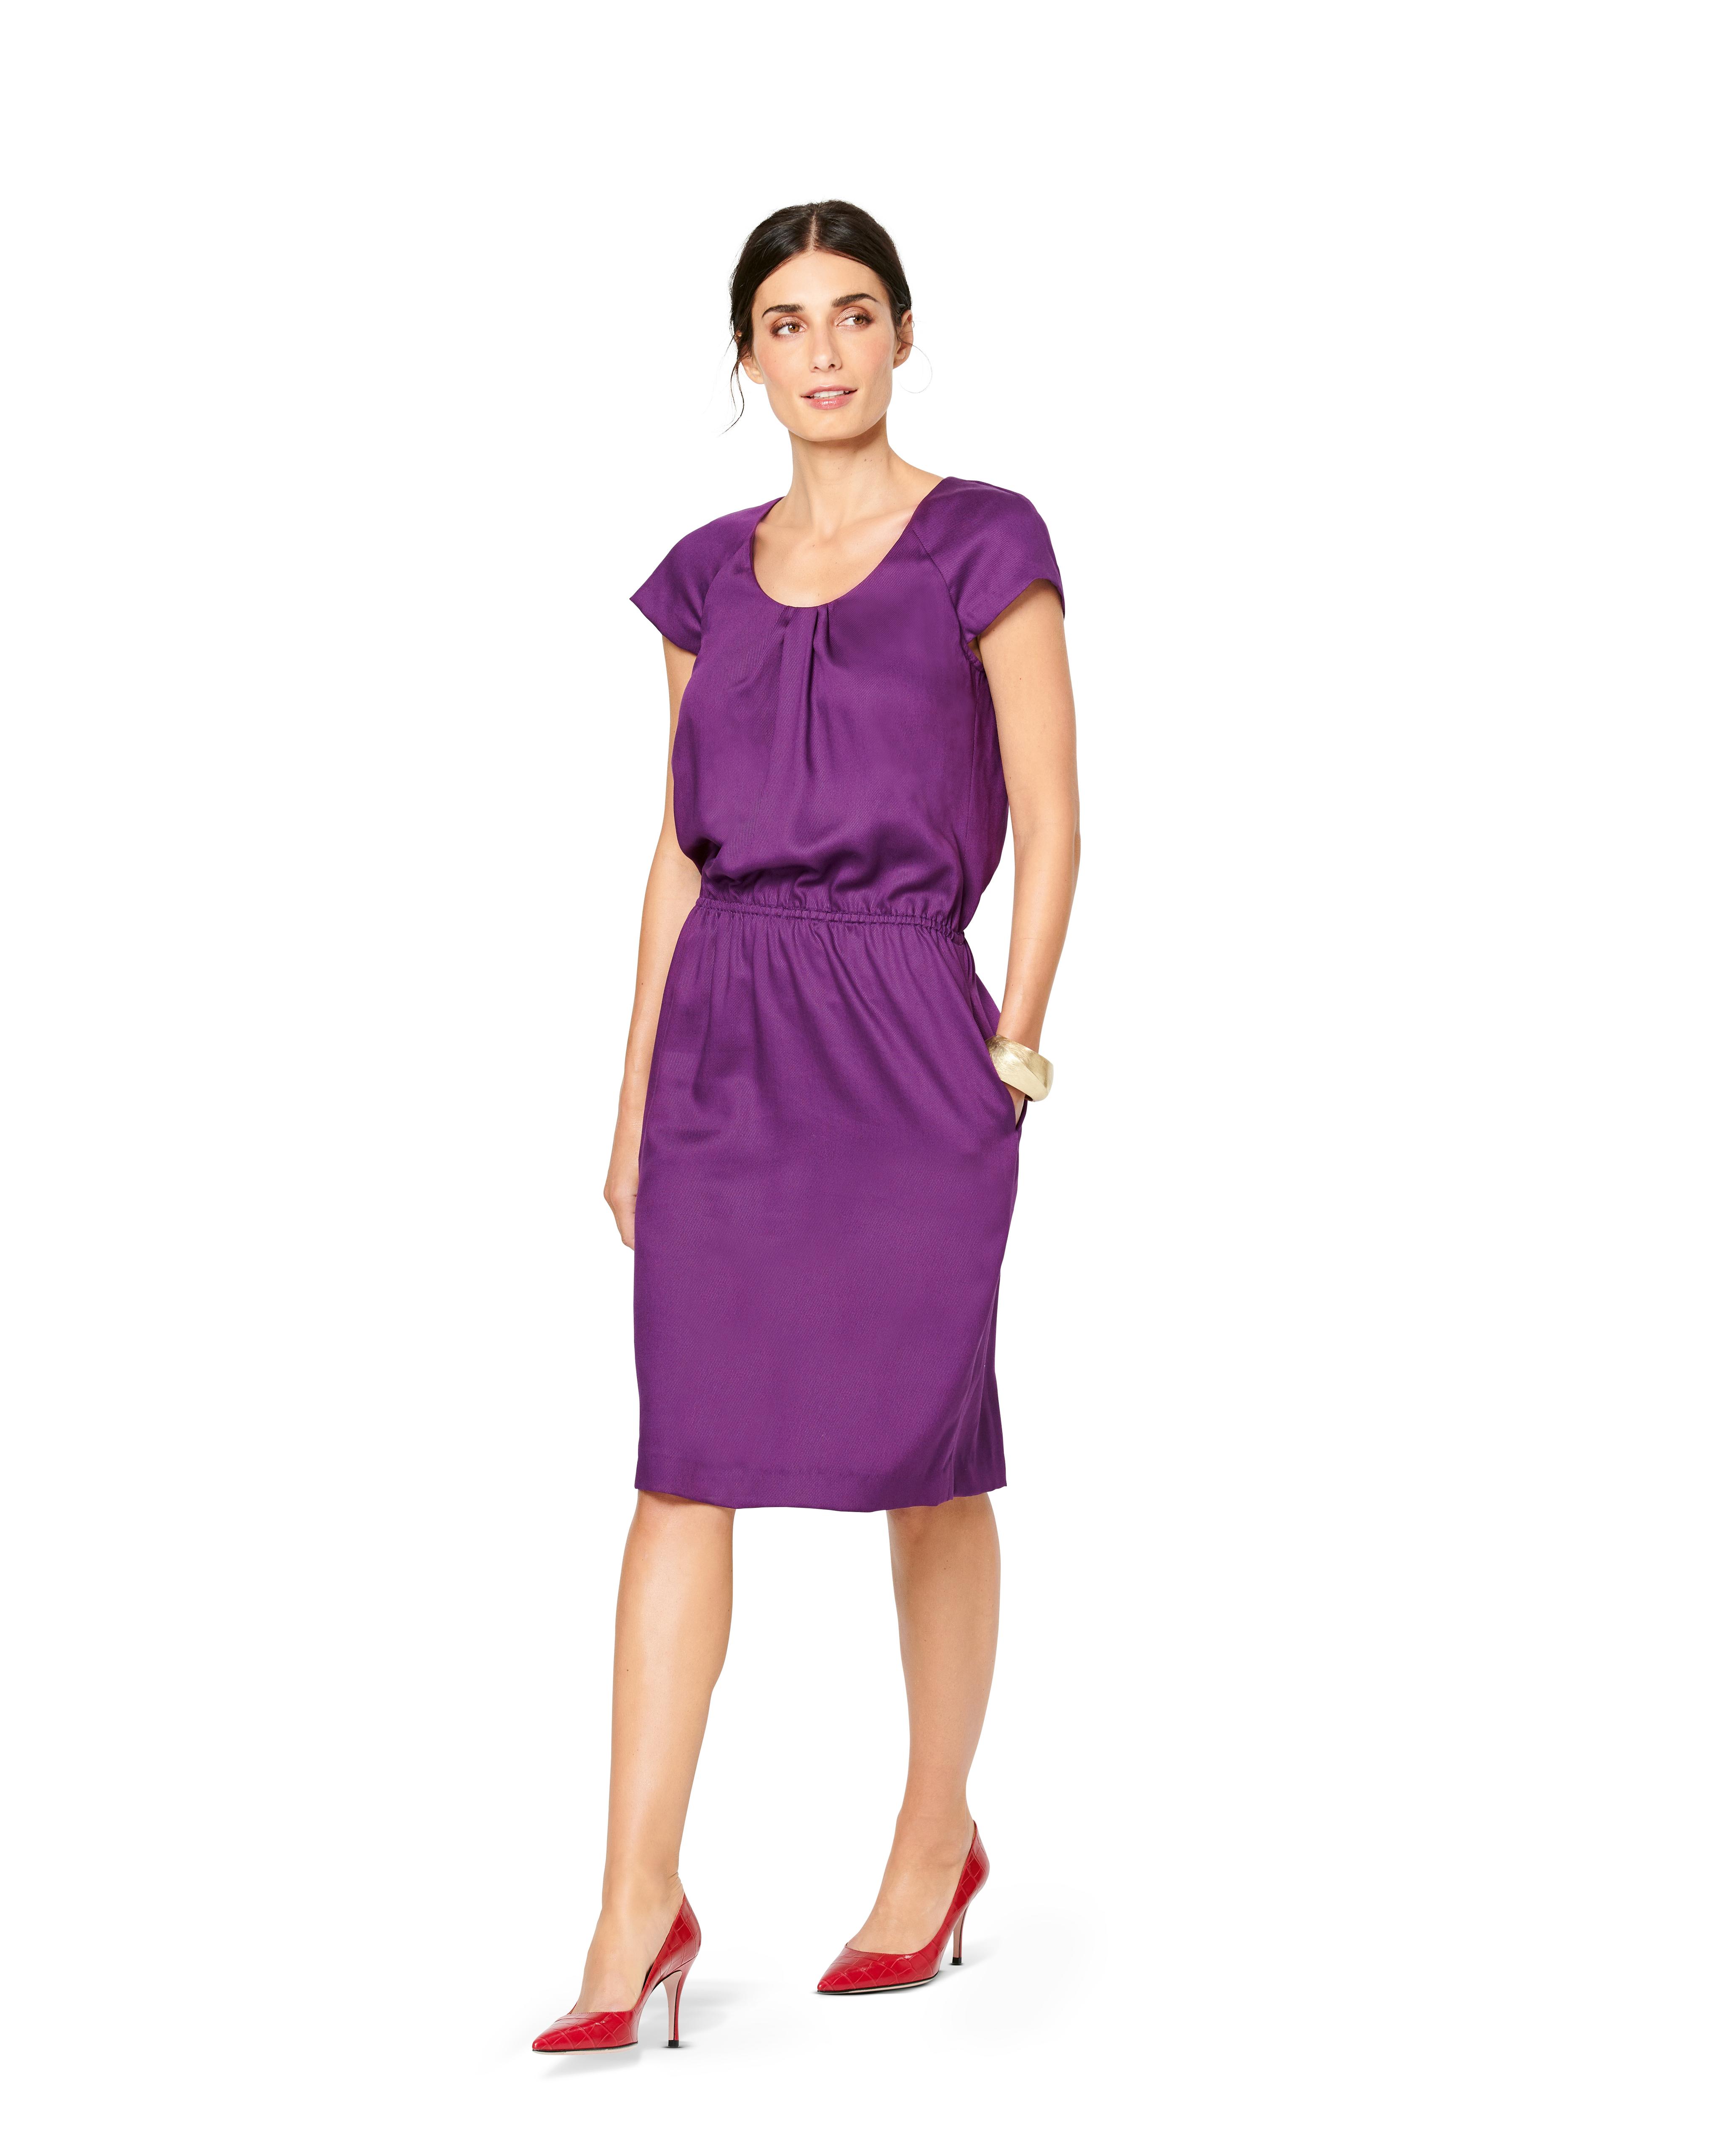 Burda B6222 Dress Sewing Pattern